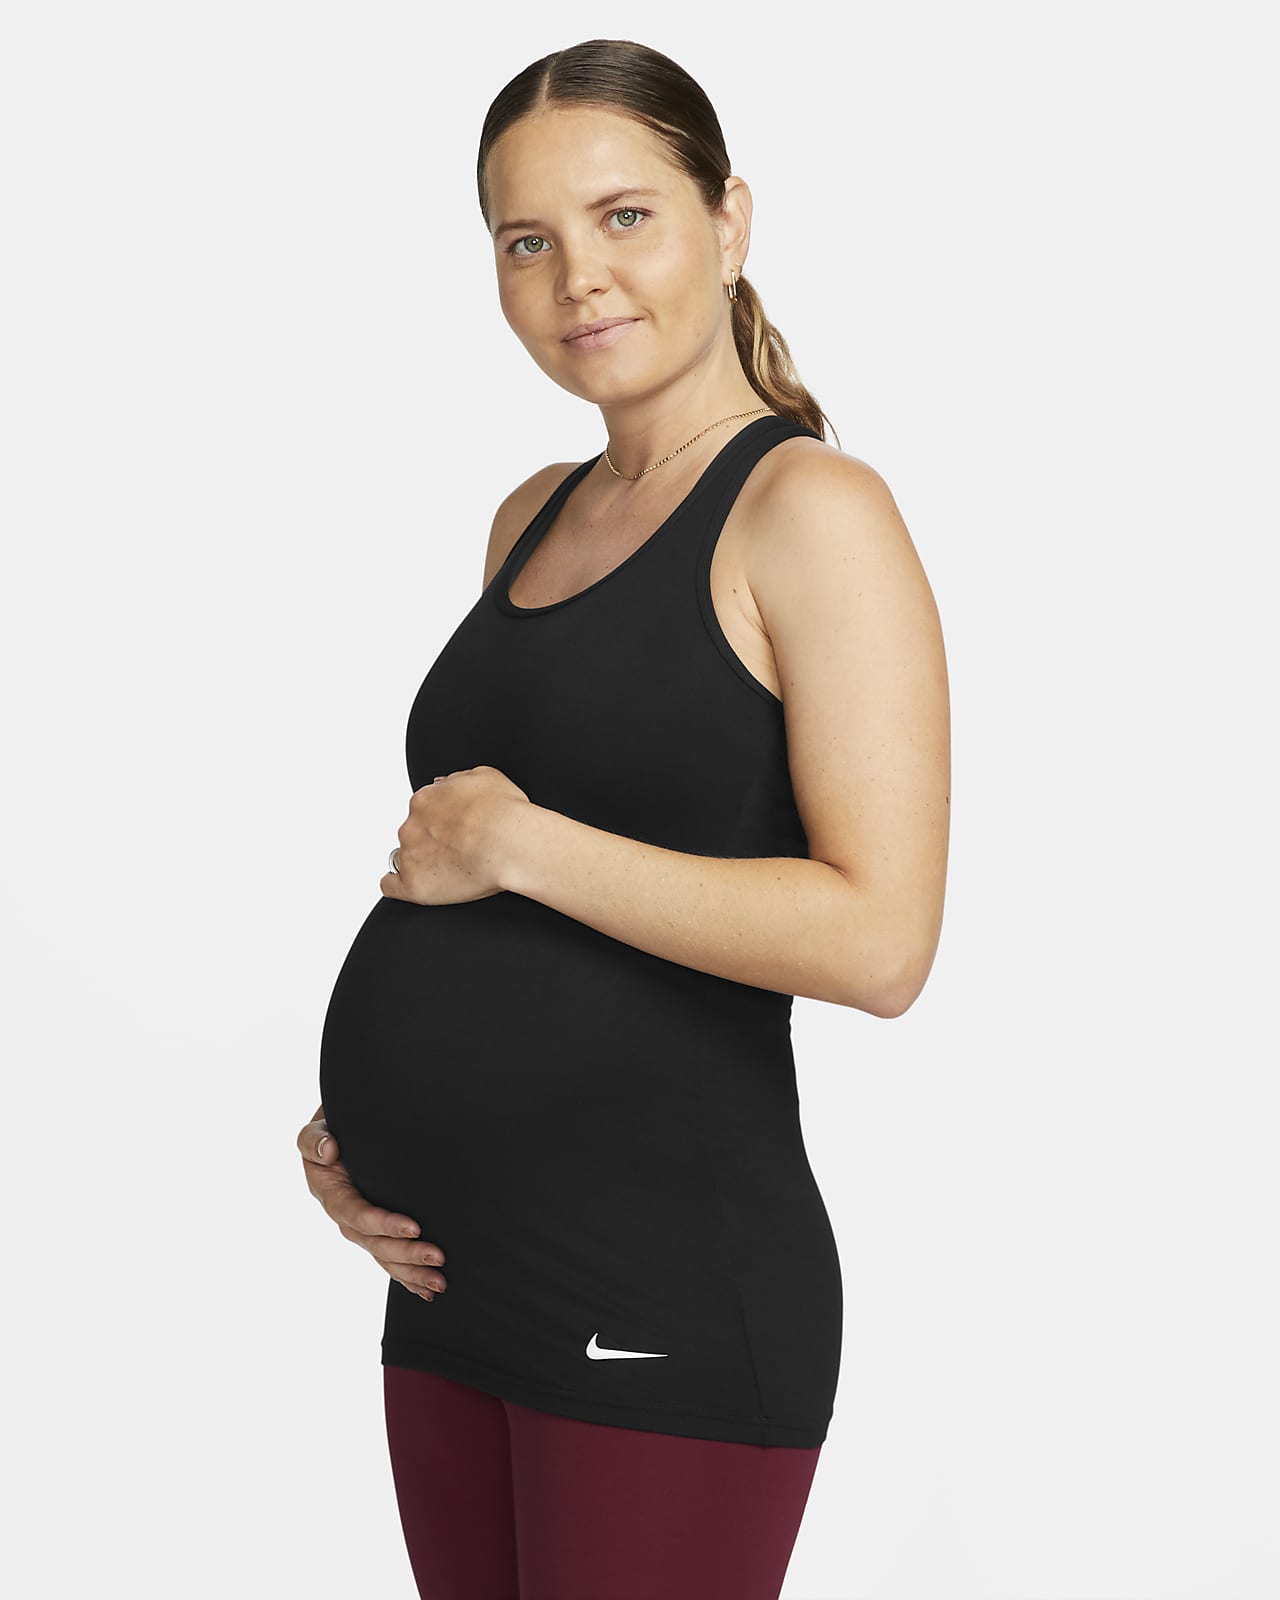 Γυναικείο φανελάκι Nike Dri-FIT (M) (μητρότητας)